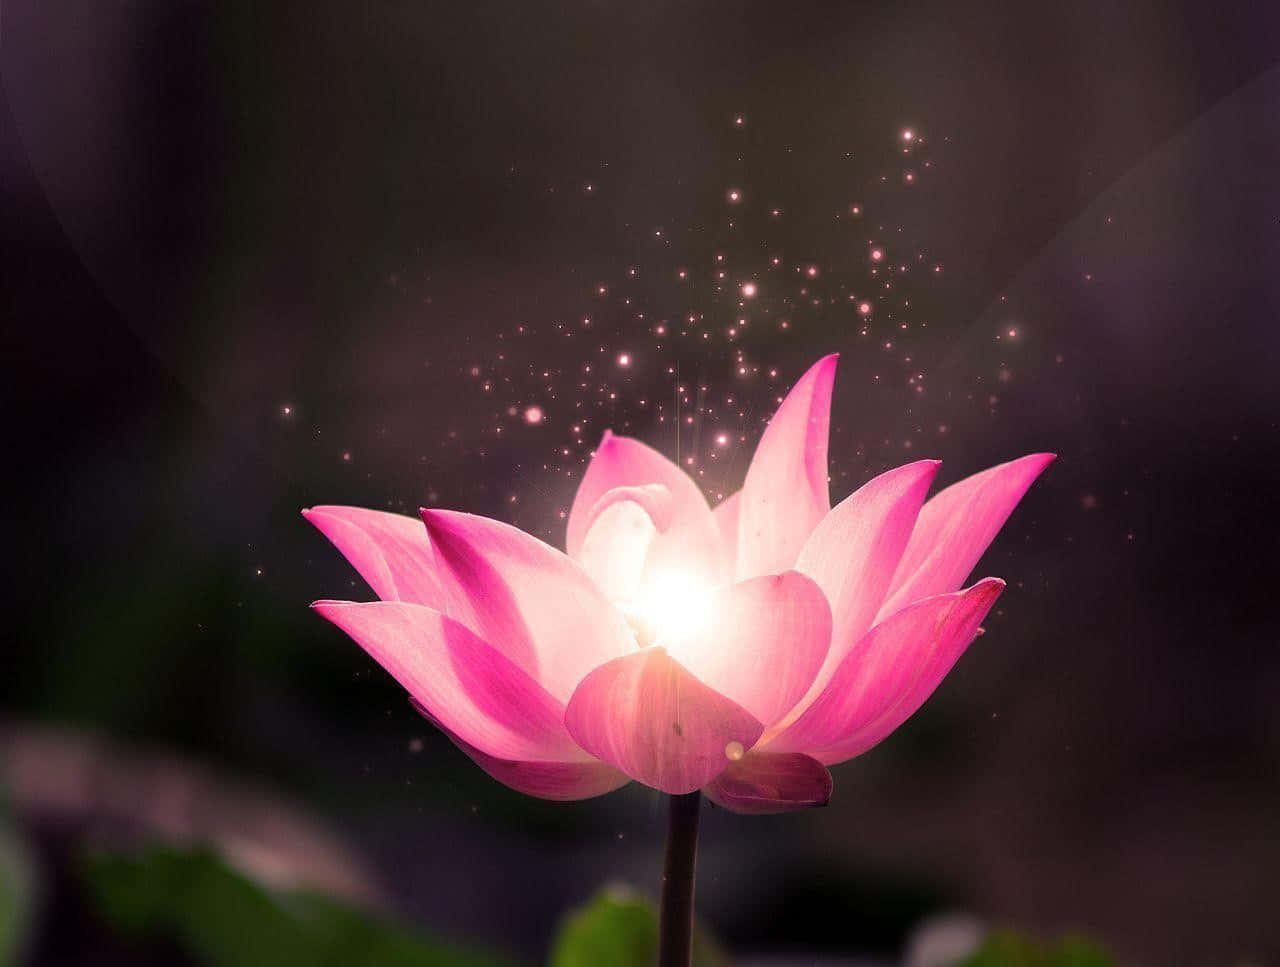 Serene Lotus Flower in Full Bloom